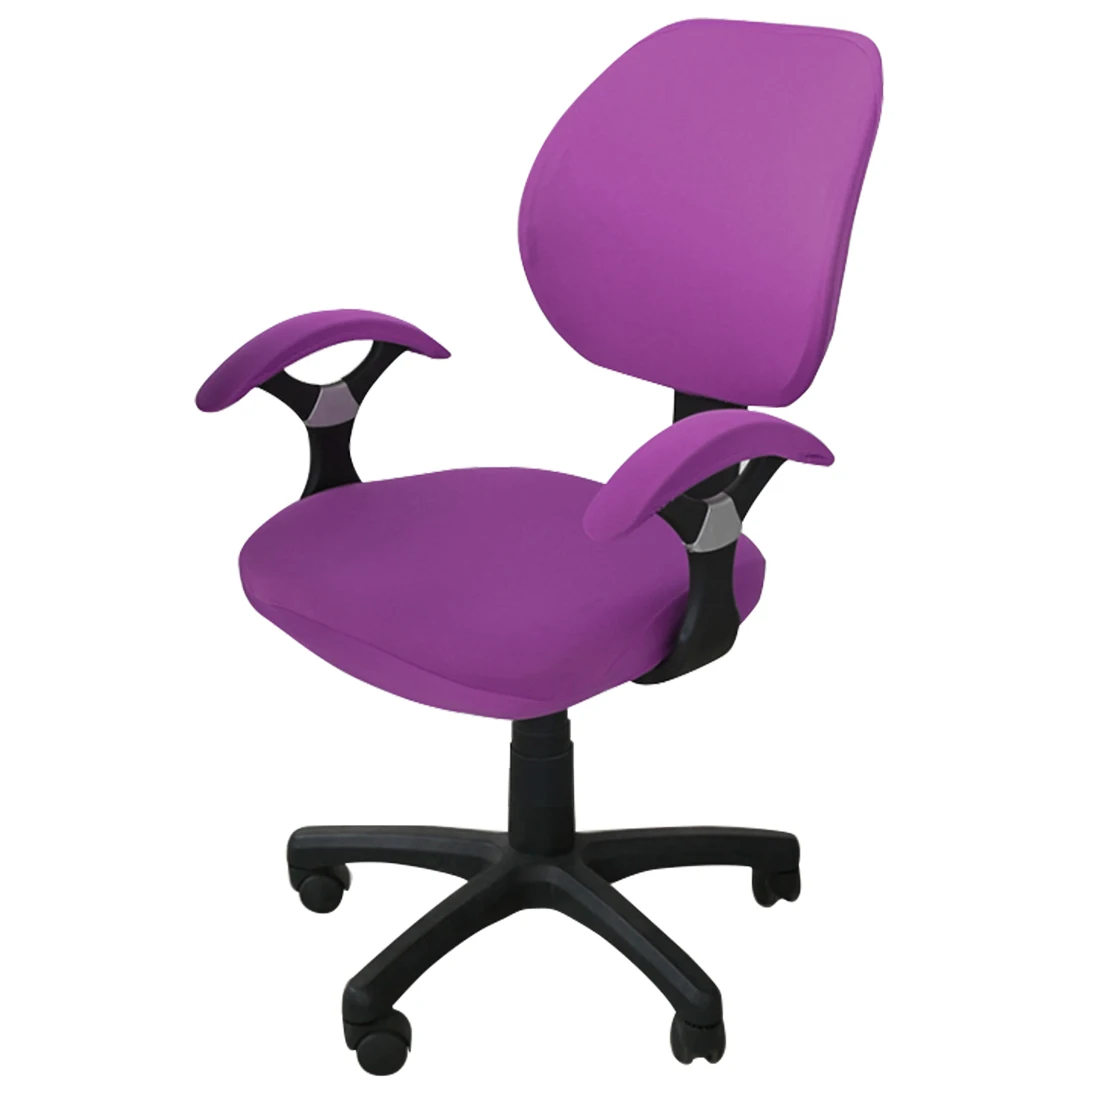 Горячая покрытия для офисных стульев спандекс компьютерное кресло подлокотник чехол цветочный принт Съемный вращающийся стрейч чехлы для стульев - Цвет: Magenta